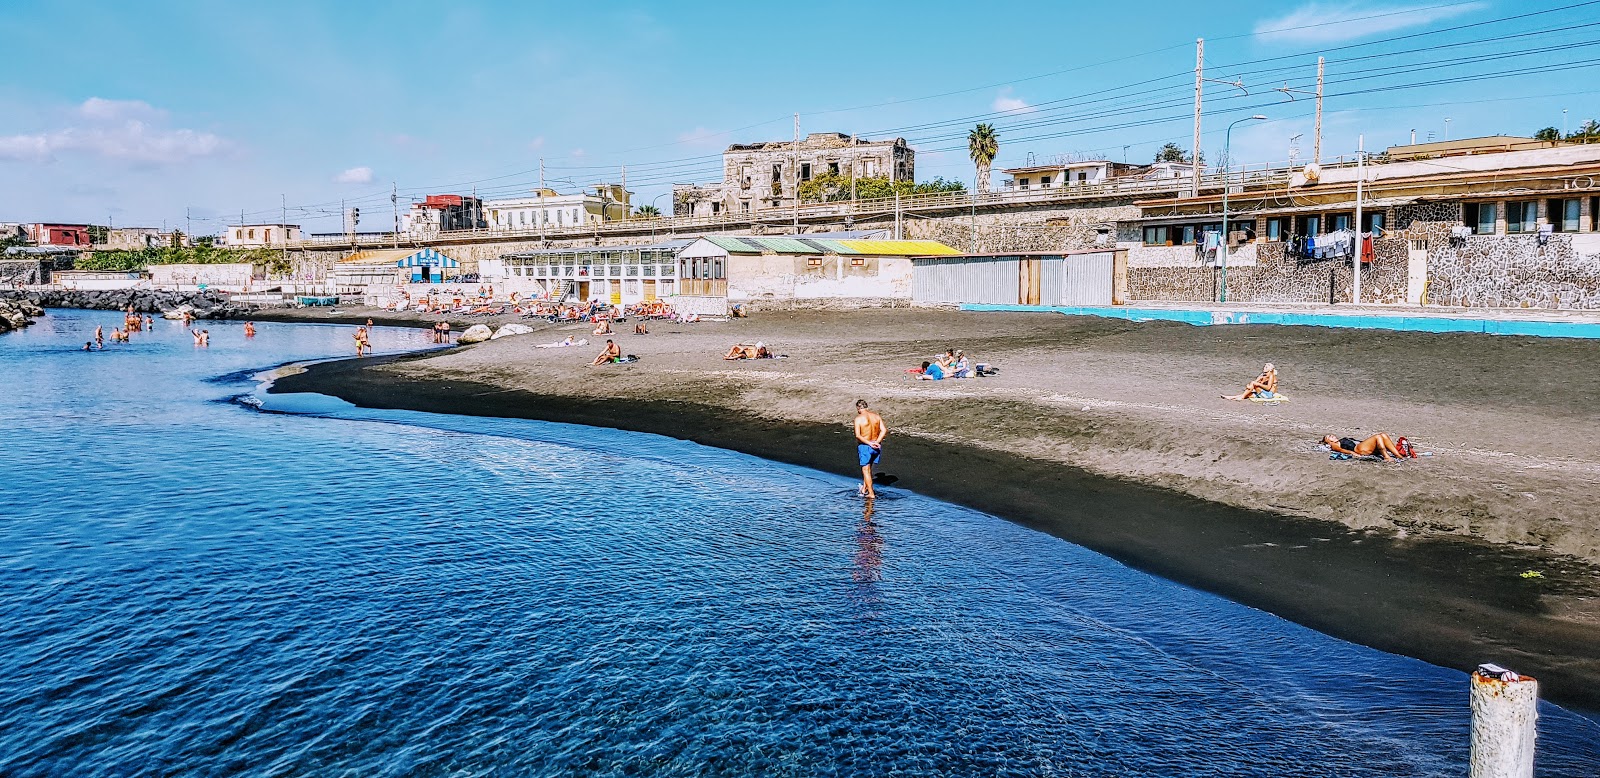 Fotografija Spiaggia di via Calastro z modra voda površino